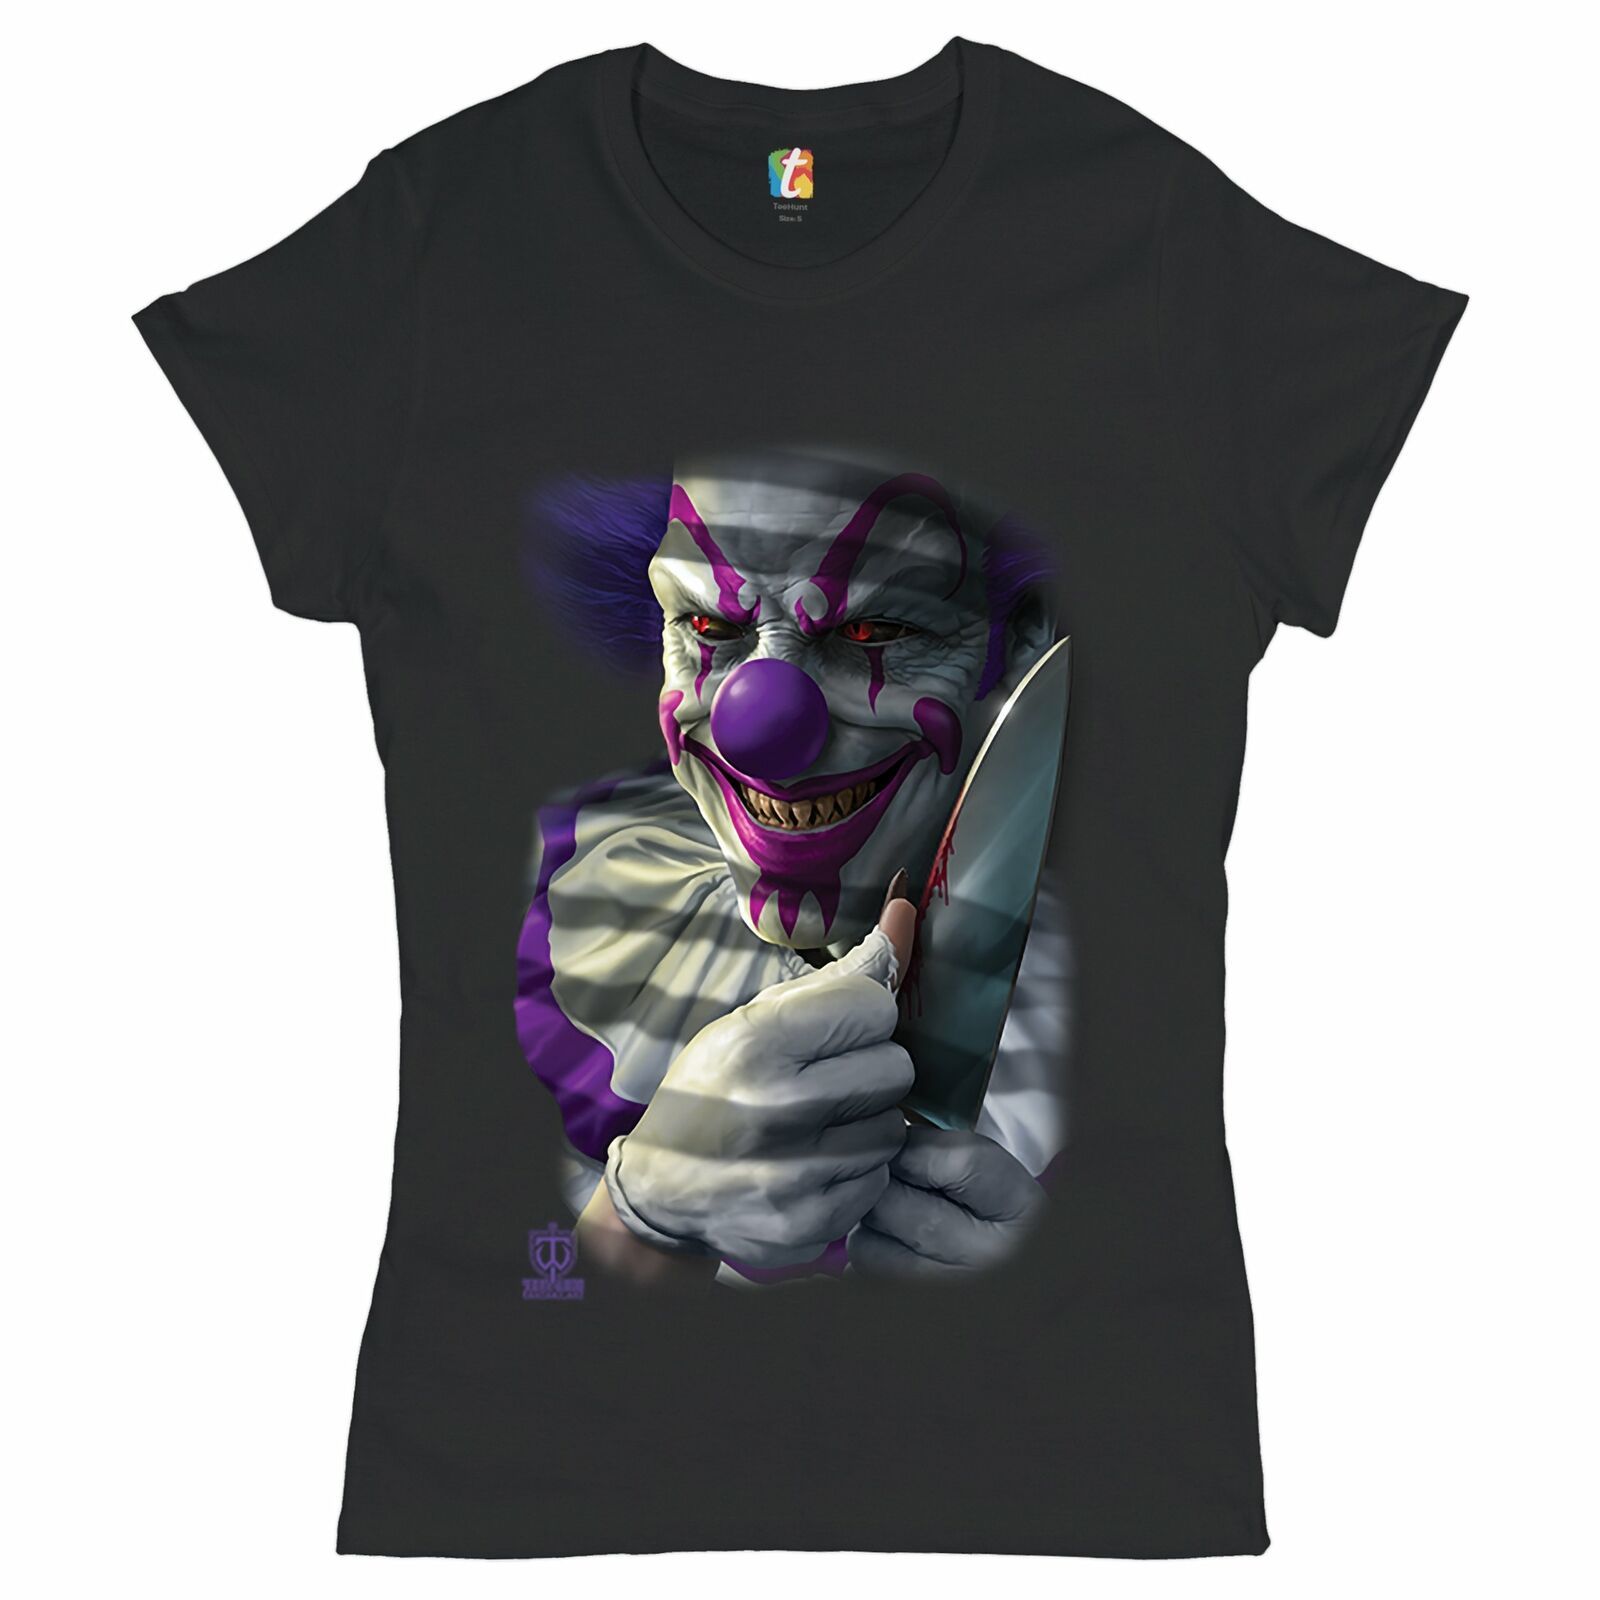 Mischievous Killer Clown T-Shirt Nightmare Horror Halloween Women's Tee